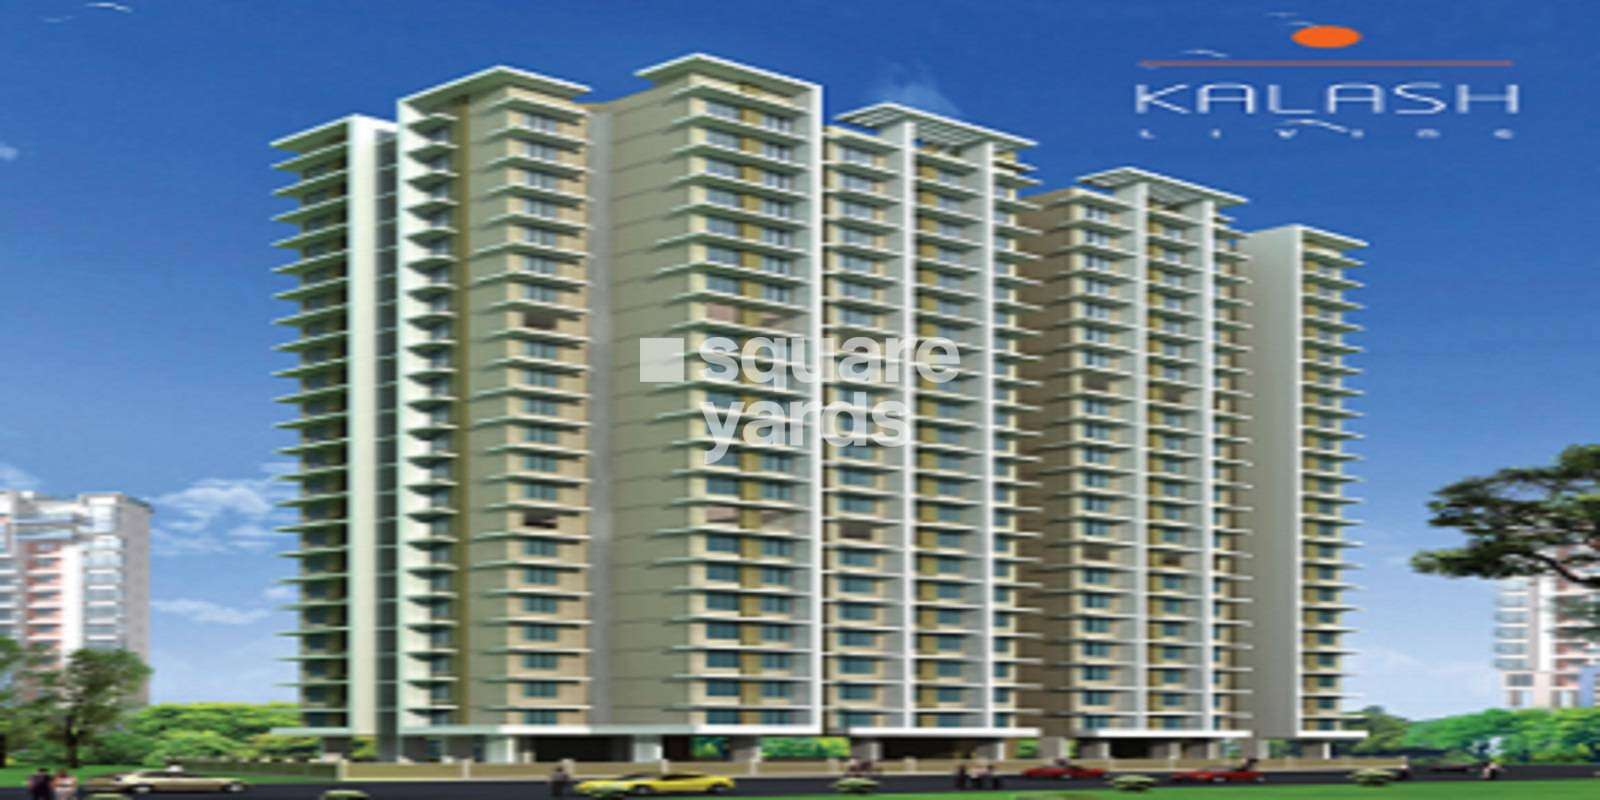 Shivraj Kalash Apartments Cover Image